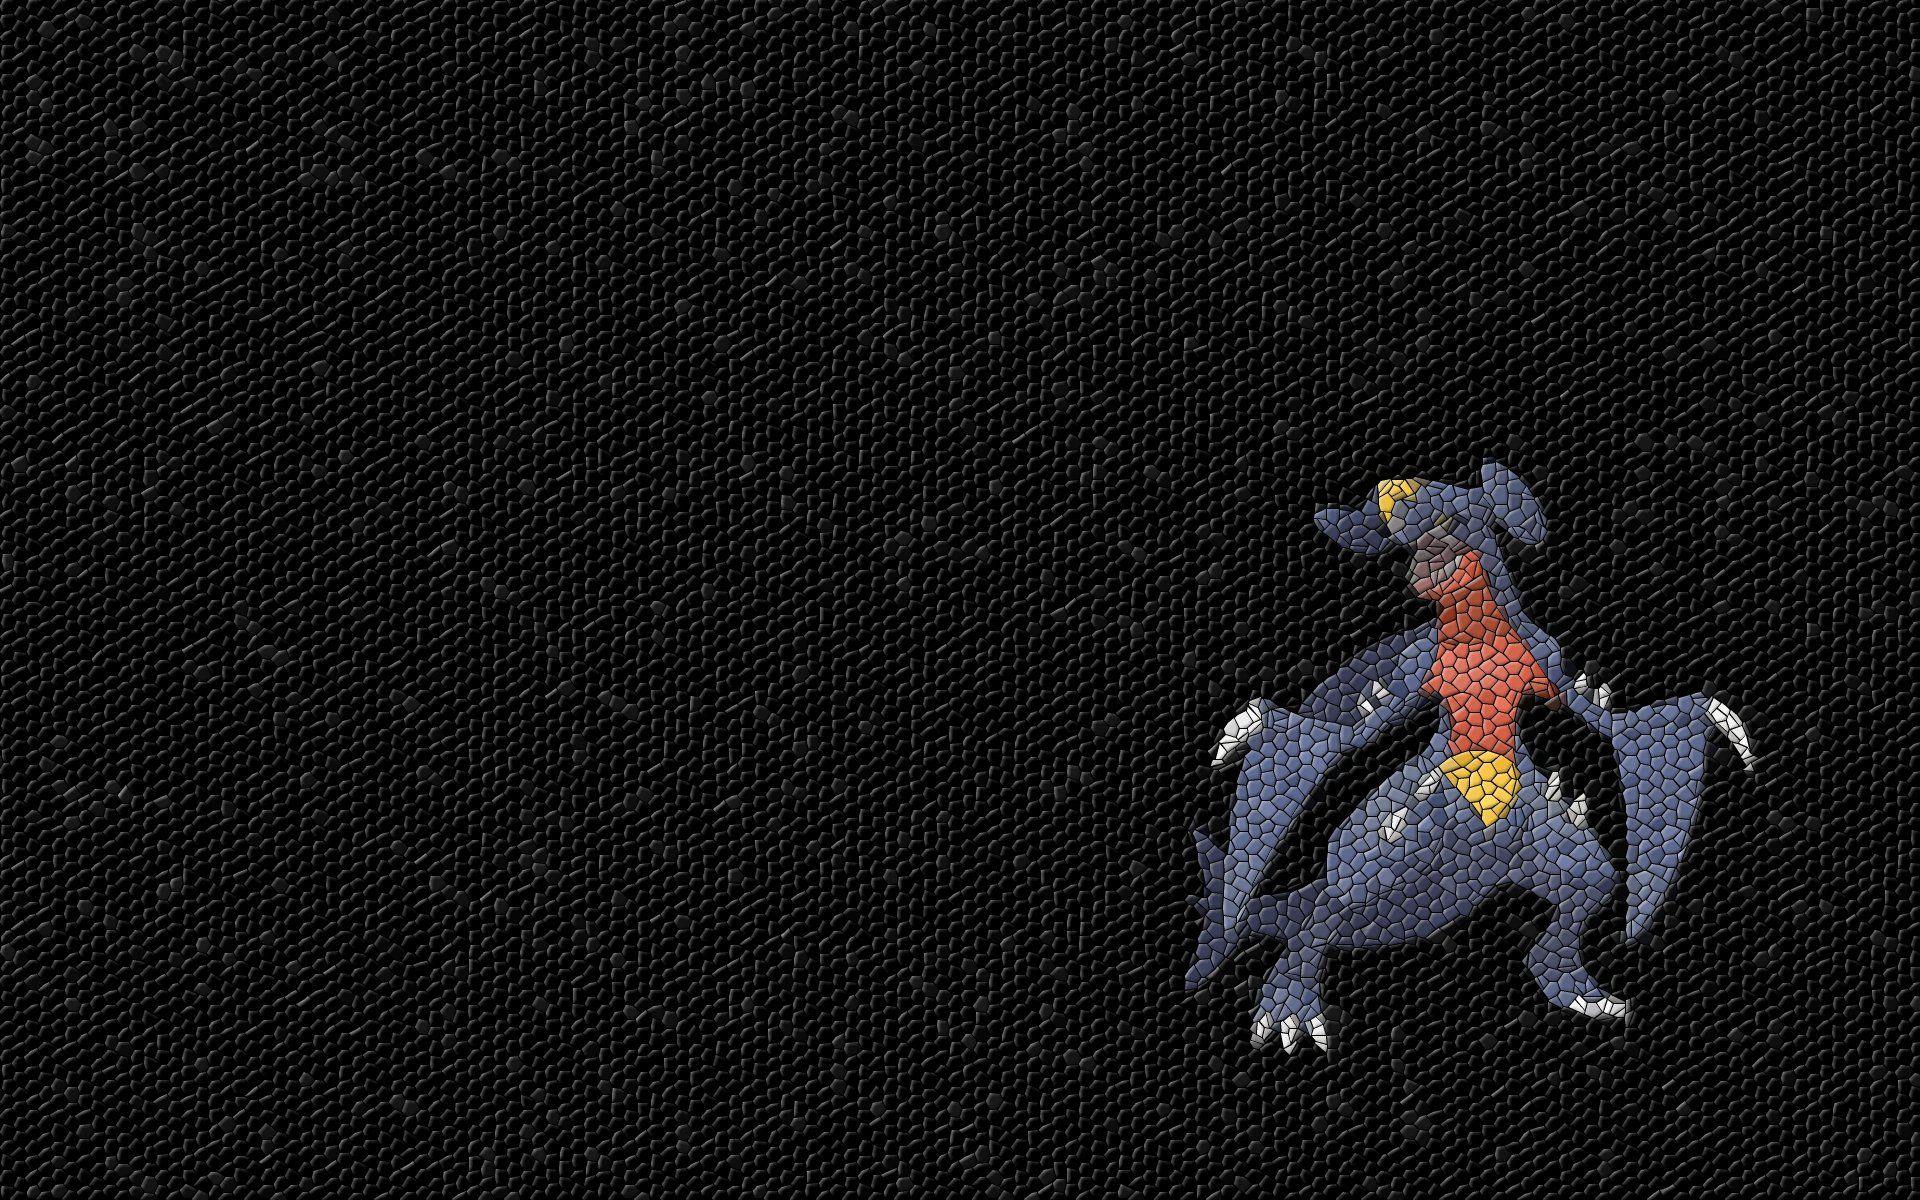 Pokemon mosaic Garchomp wallpaperx1200